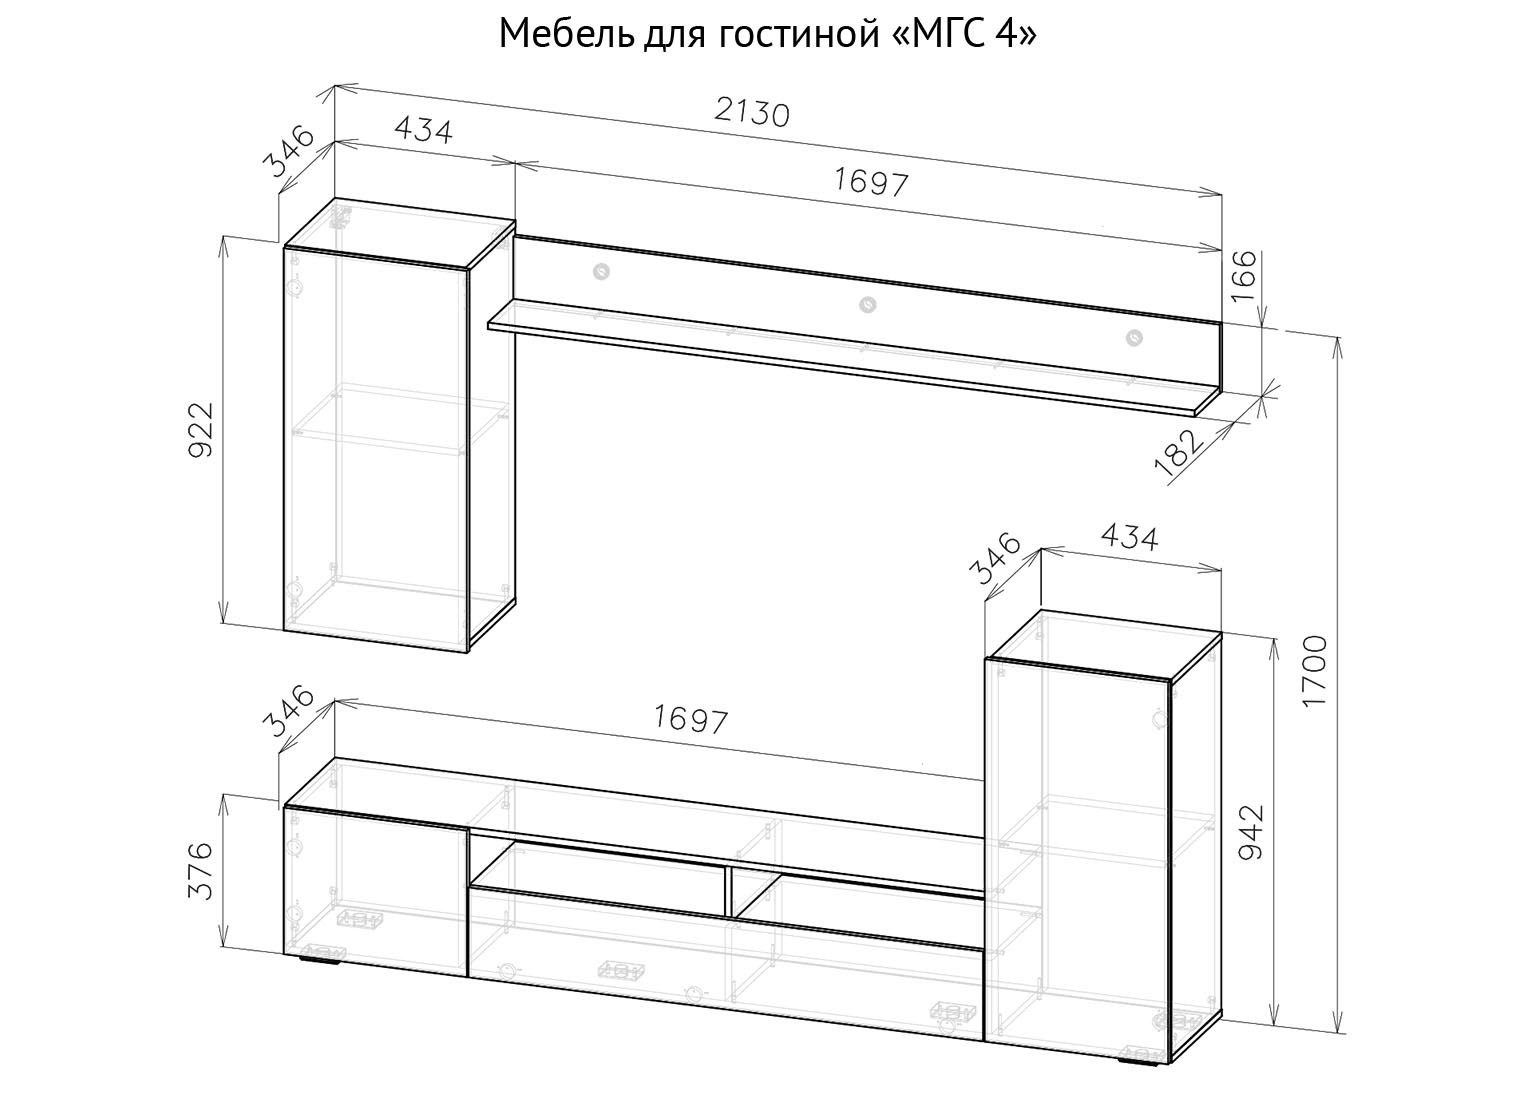 Мебель для гостиной МГС 4 схема